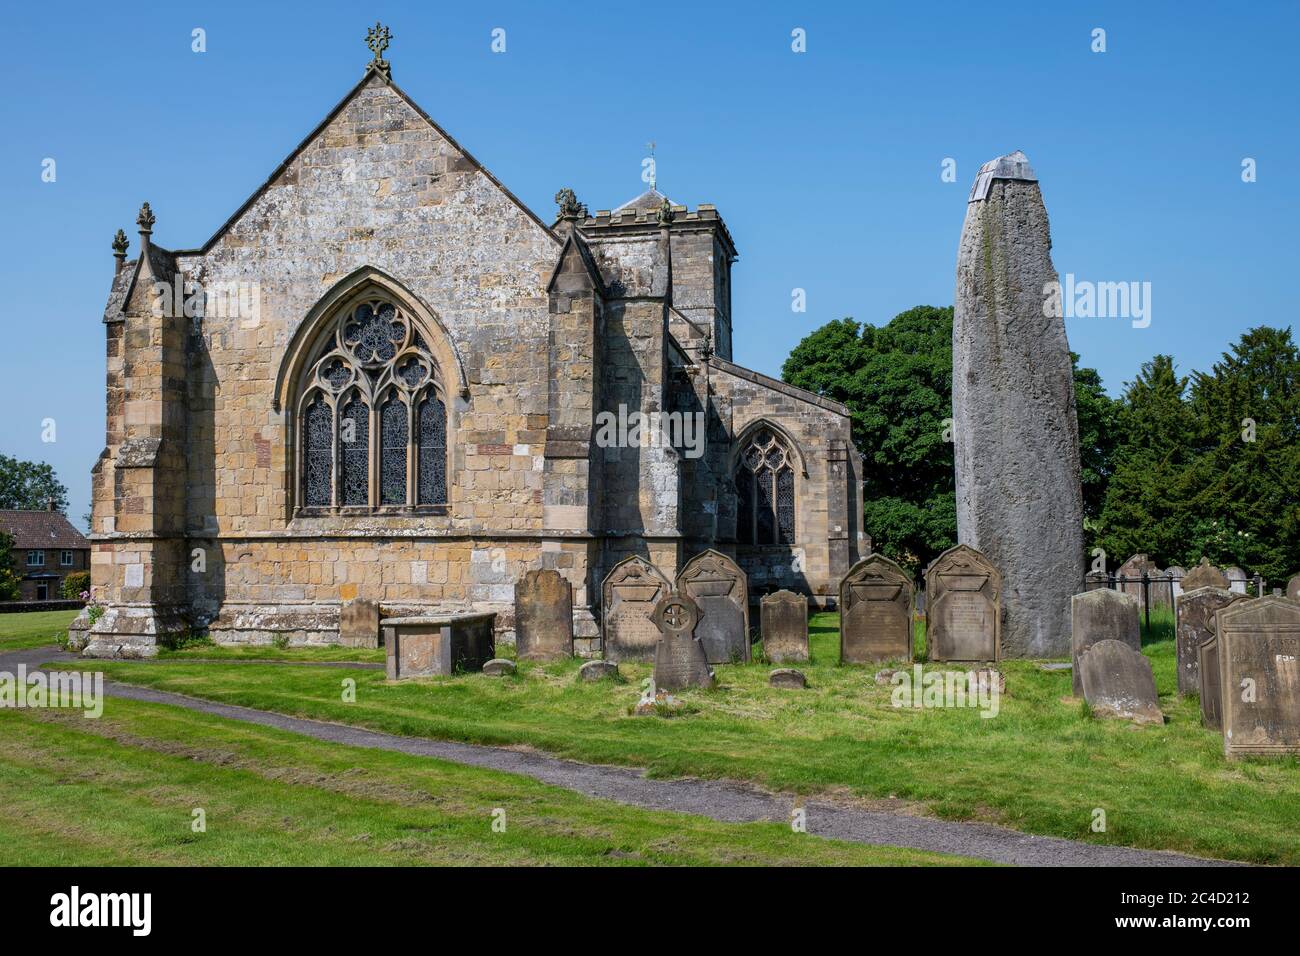 All Saints église à côté de la plus haute (25 pieds) pierre monolithique de GB, Rudston, East Yorkshire, Royaume-Uni Banque D'Images